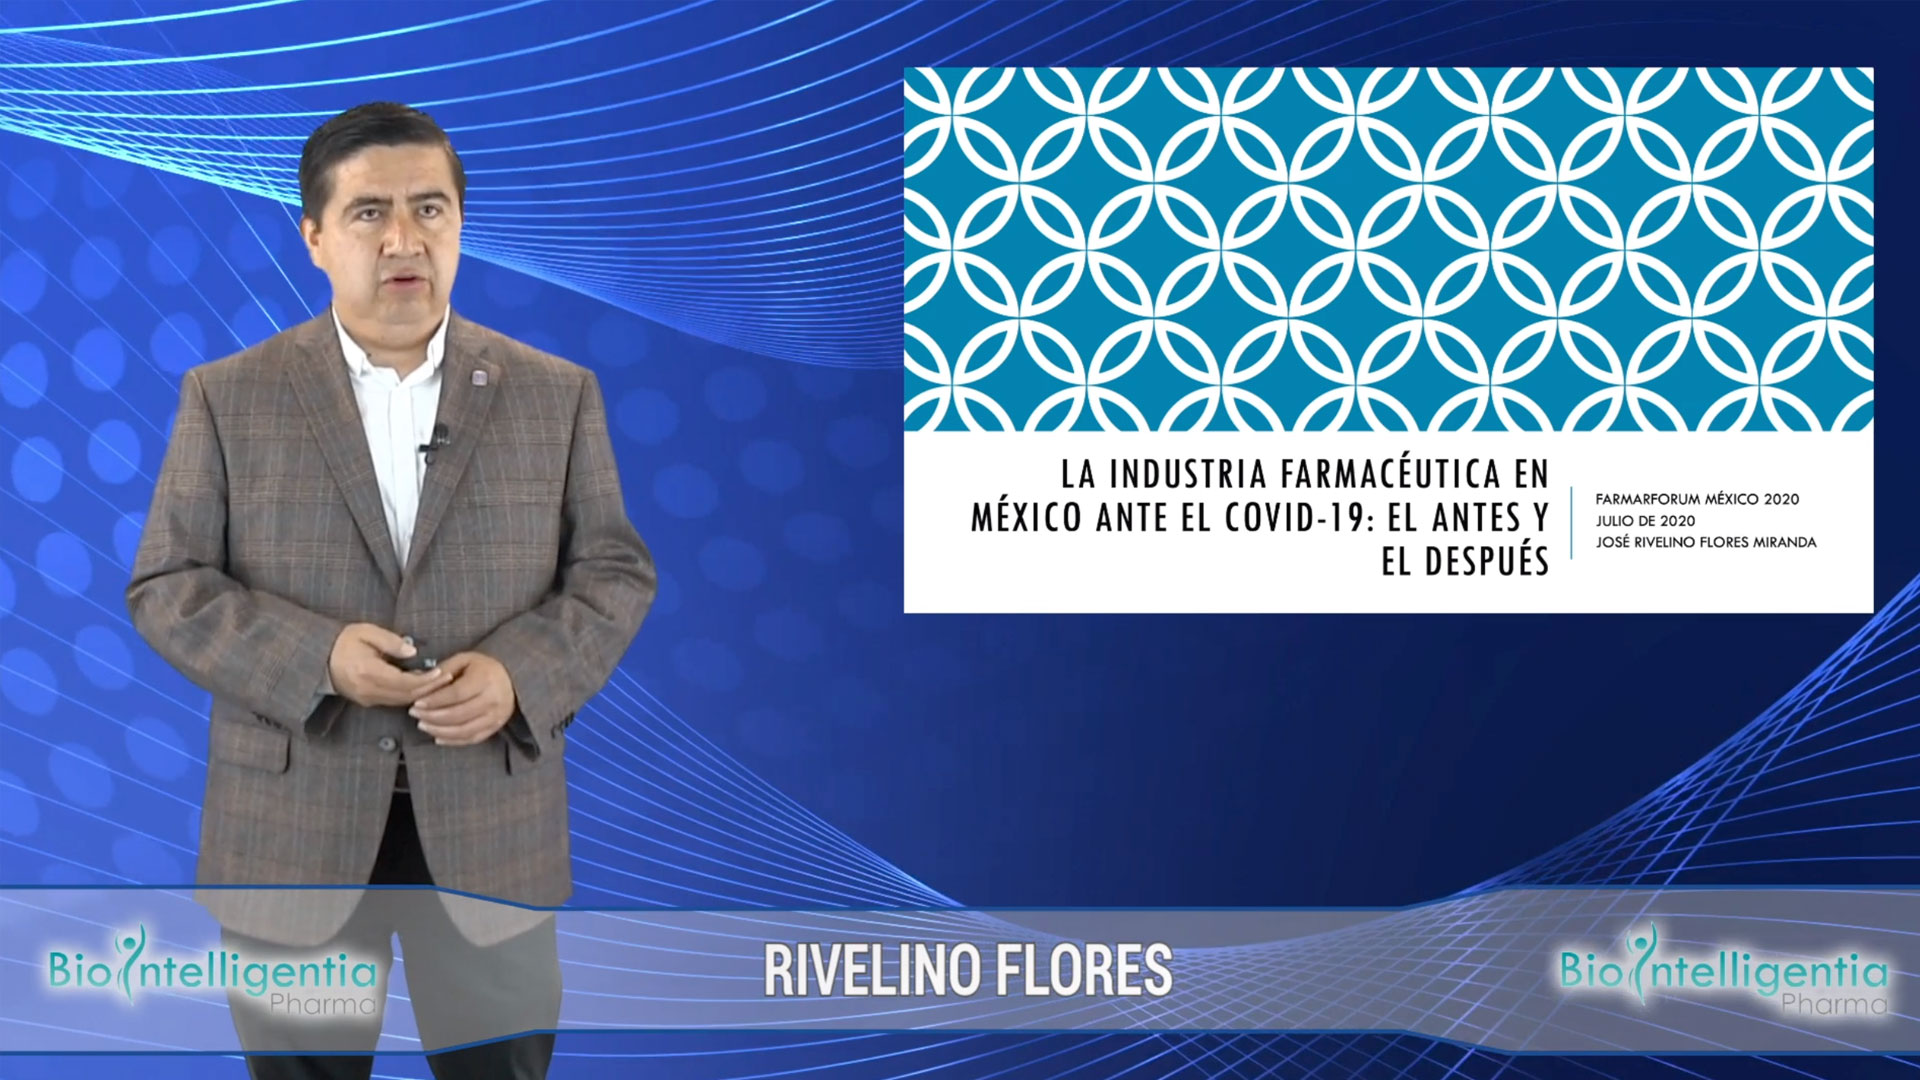 RIVELINO FLORES - La industria farmacéutica en México ante el Covid-19, el Antes y el Después